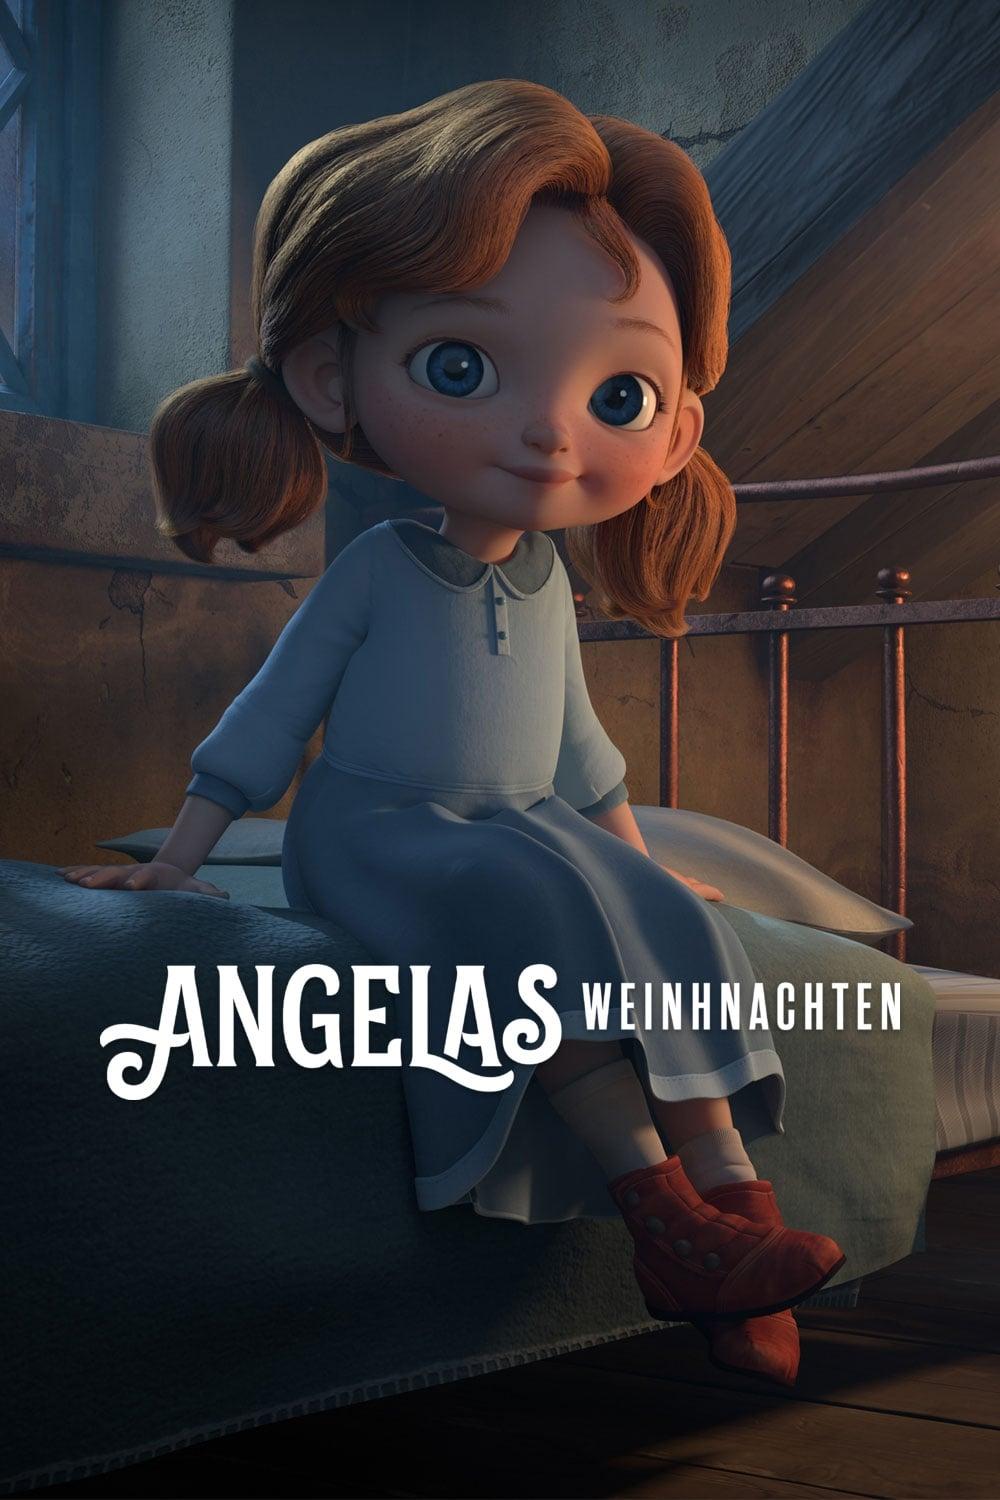 Angelas Weihnachten poster